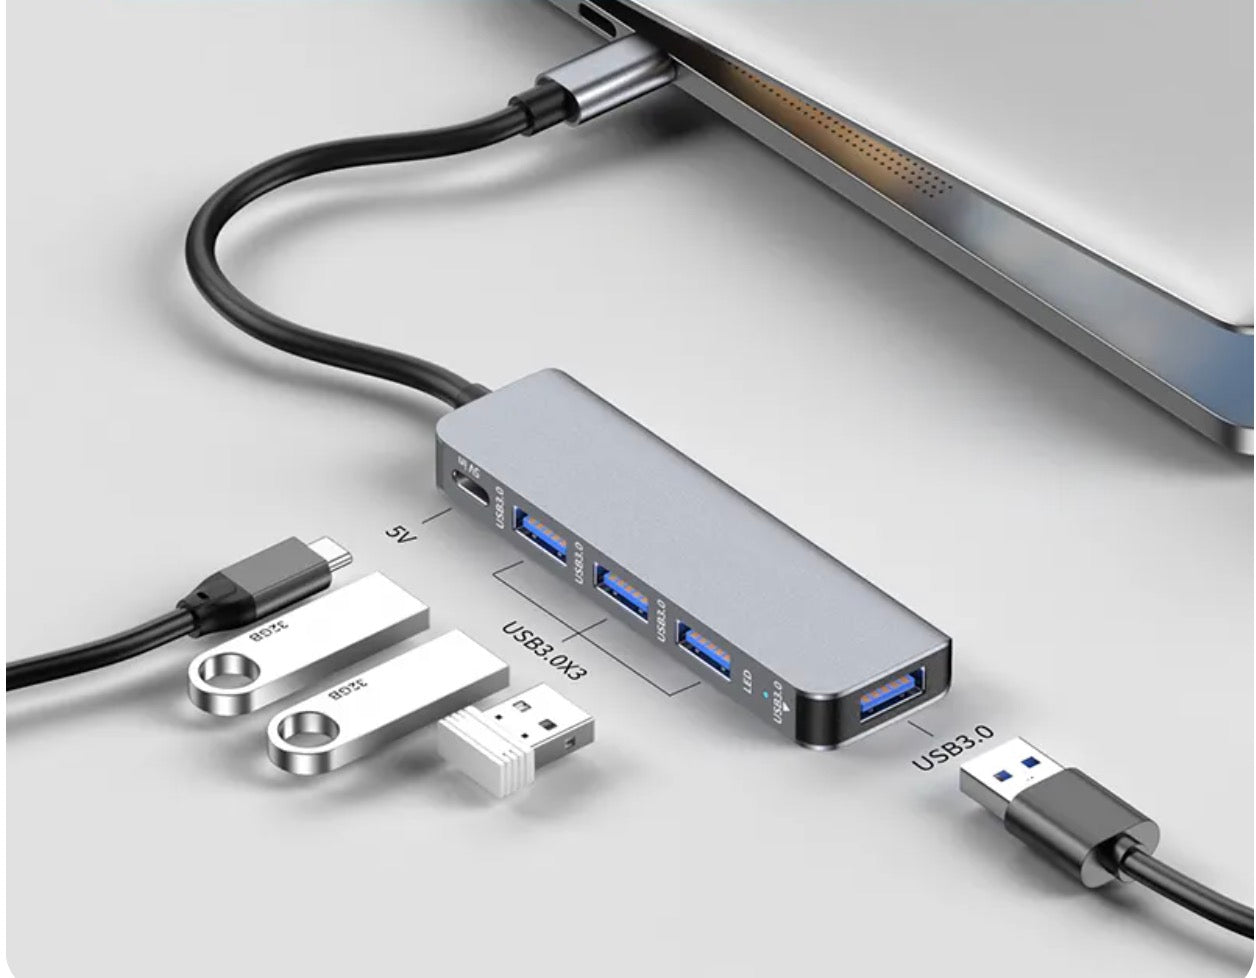 USB C 5 in 1 Hub with 4K HDMI USB 3.0 2 x USB 2.0 Type A PD 100W Ports